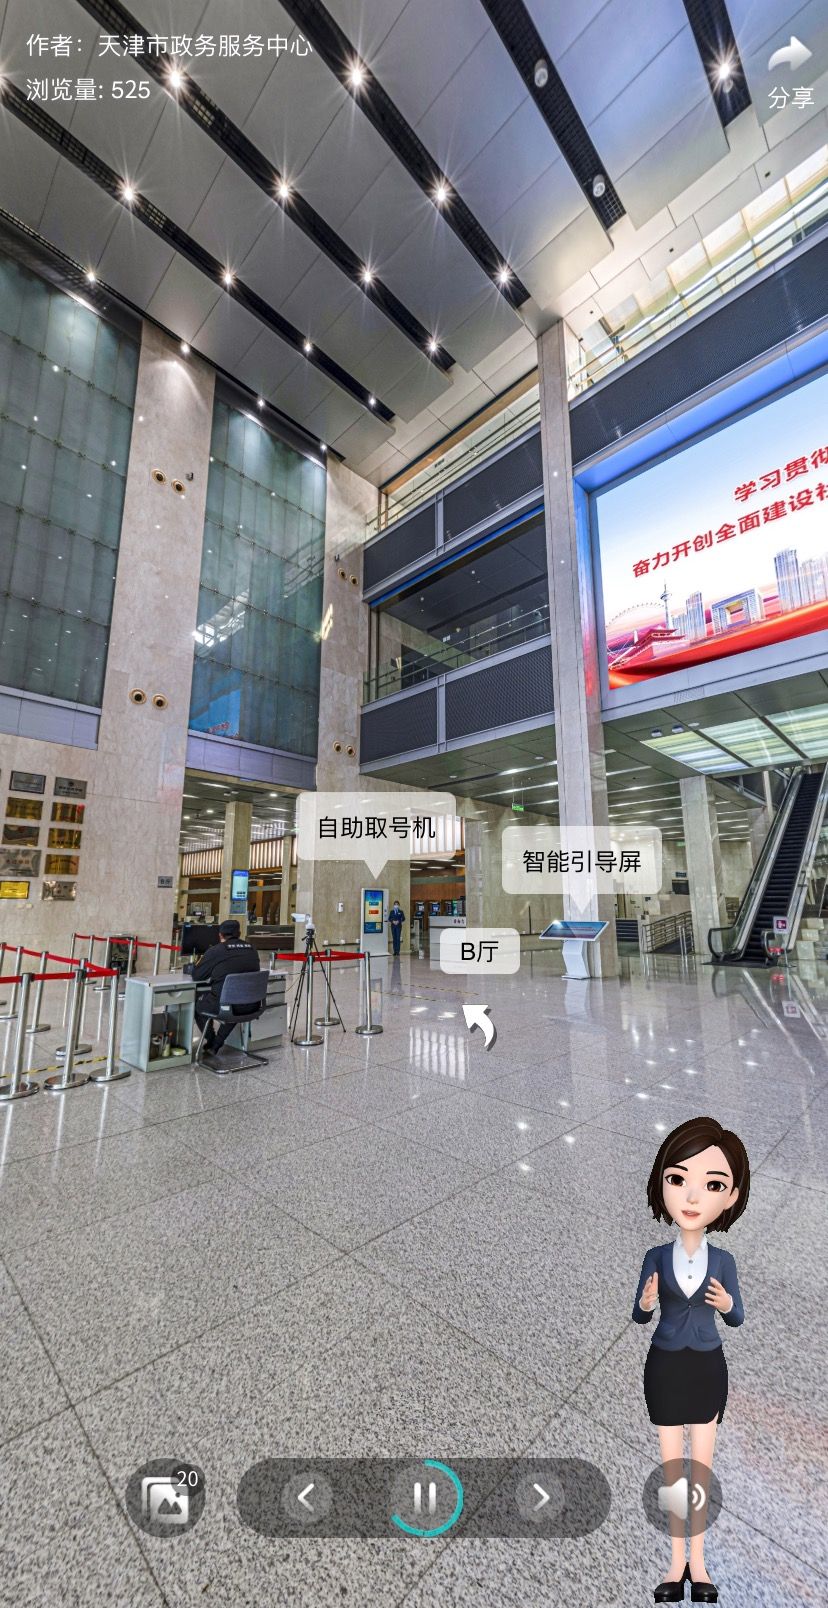 天津市政务服务中心大厅VR全景导航功能上线！欢迎您随时随地“来”~